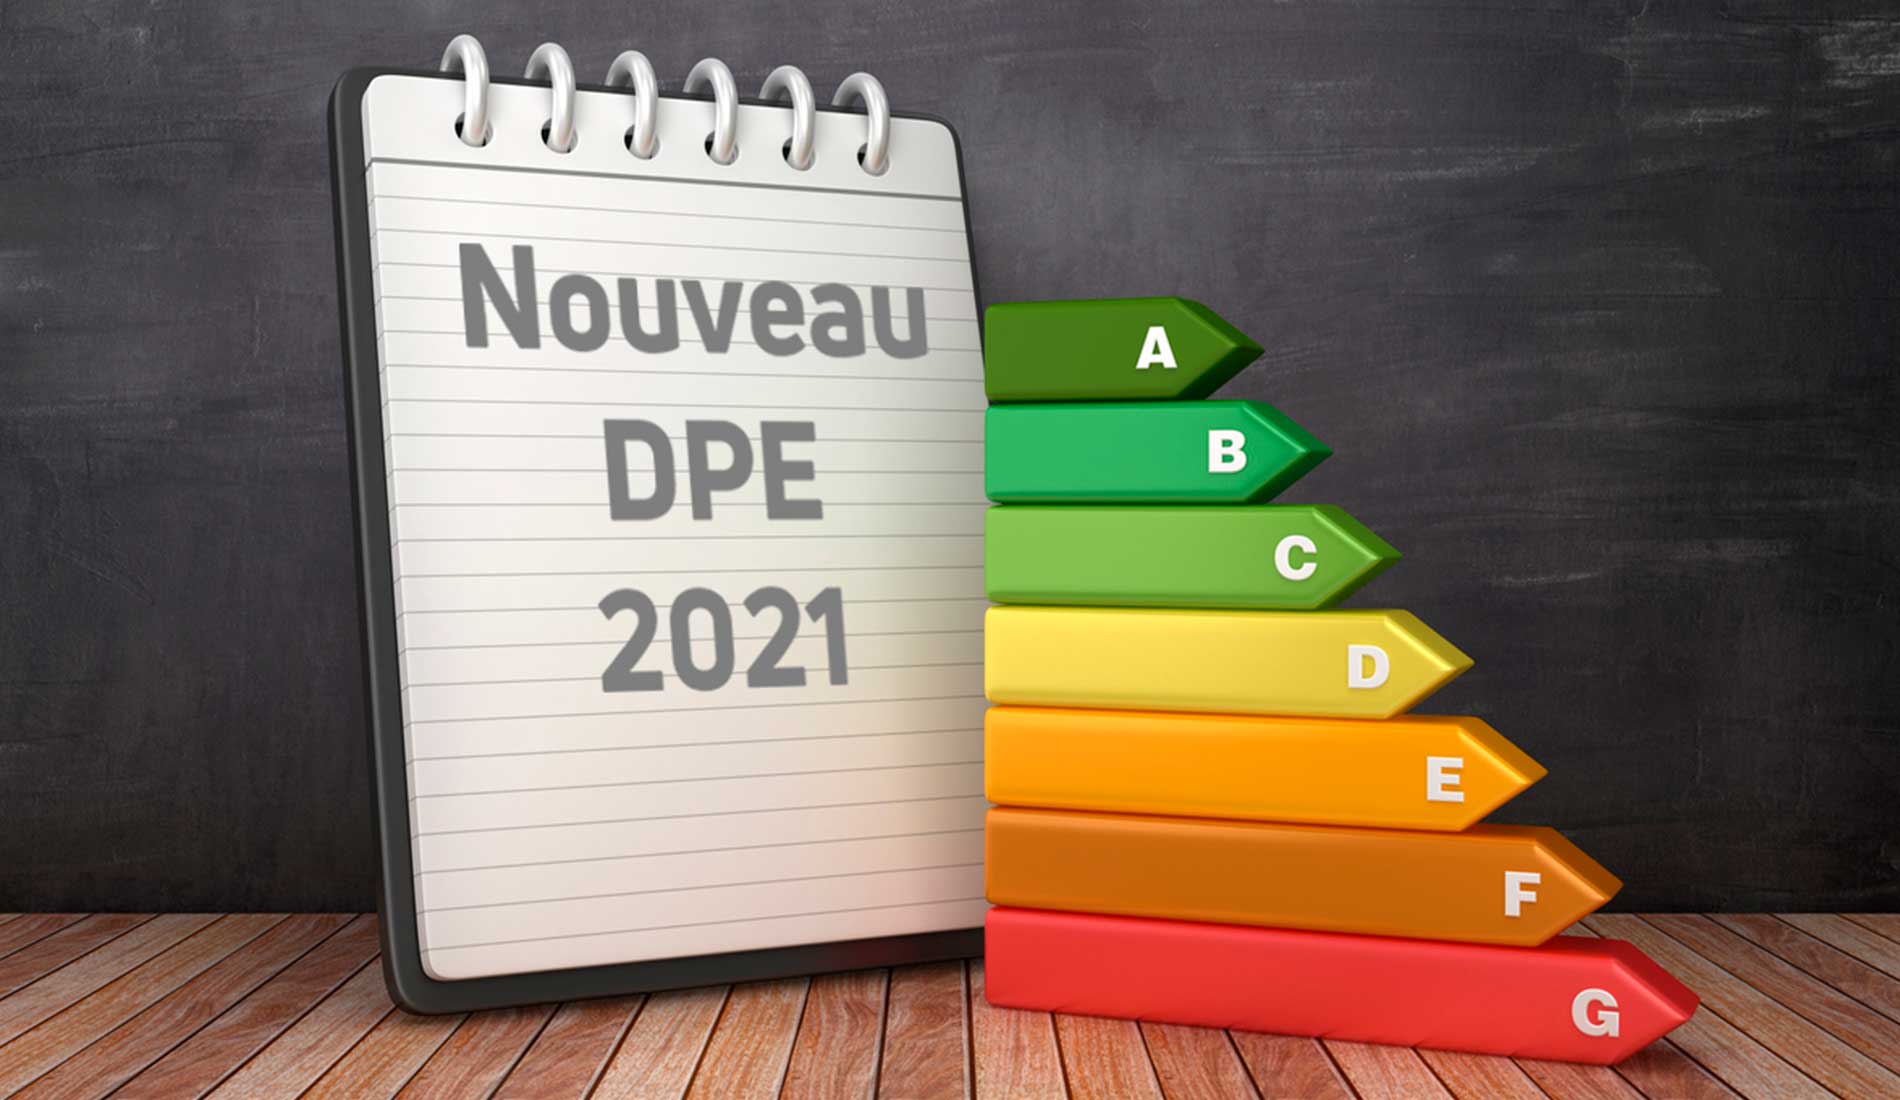 Nouveau DPE - Ce qui change au 1er juillet 2021